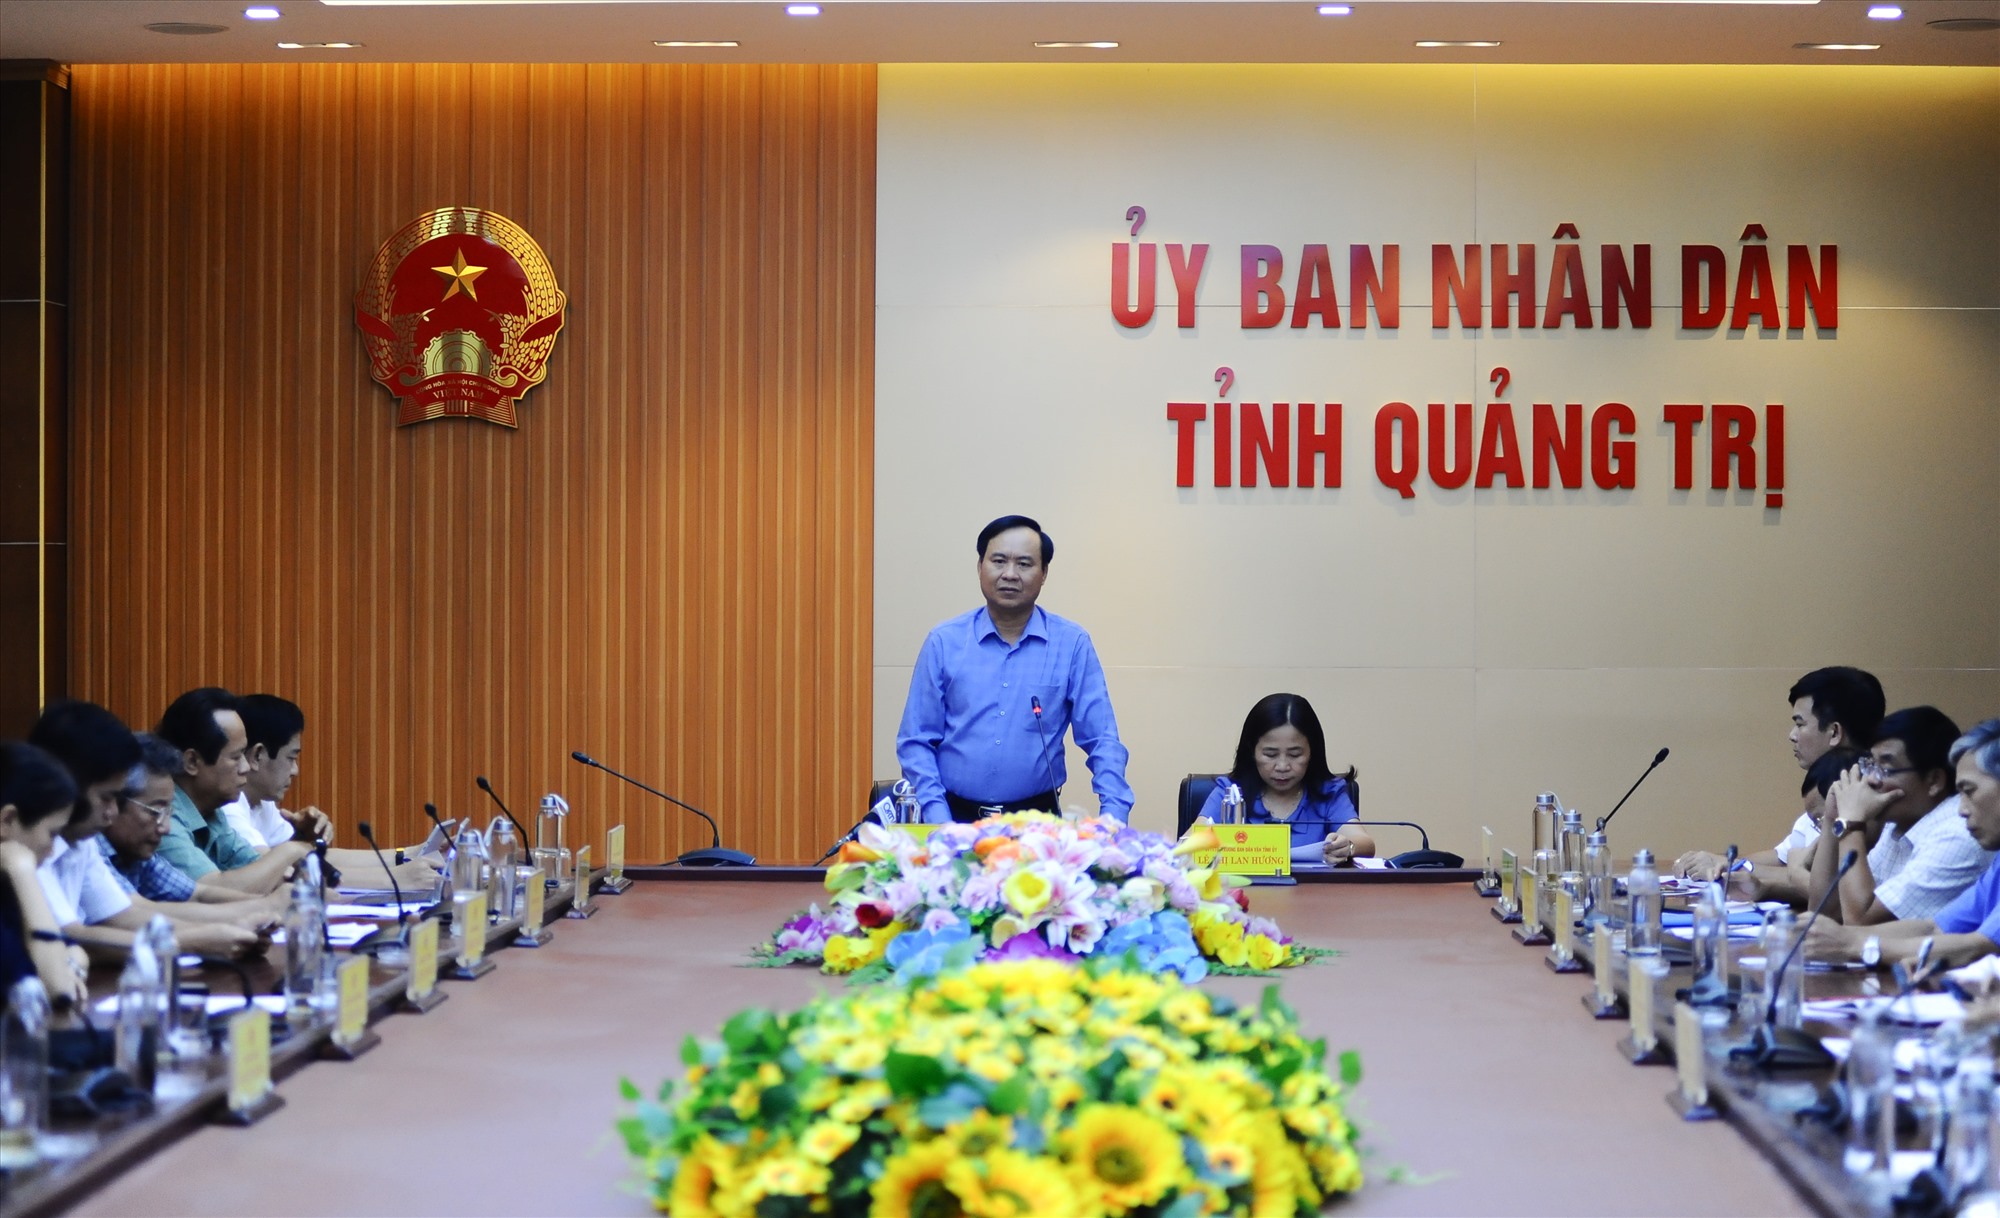 Chủ tịch UBND tỉnh Võ Văn Hưng kết luận cuộc họp - Ảnh: Trần Tuyền